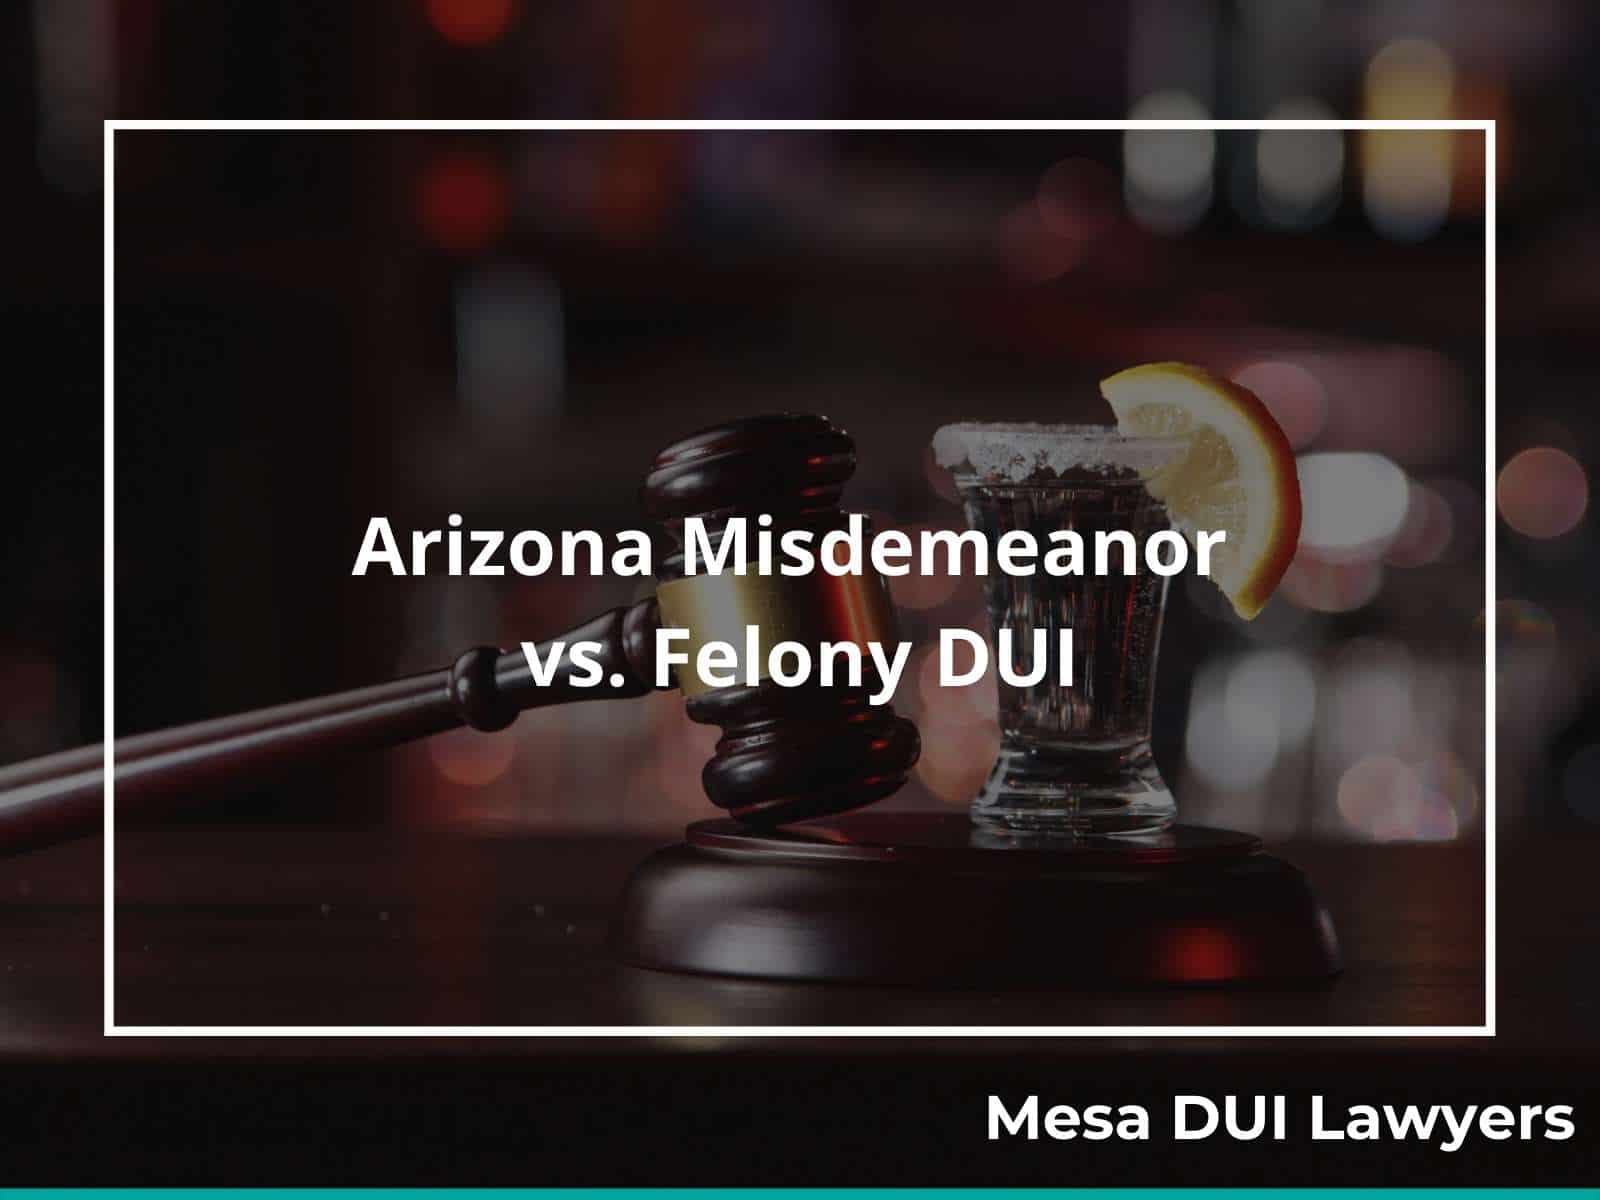 Misdemeanor vs. felony DUI convictions in Arizona